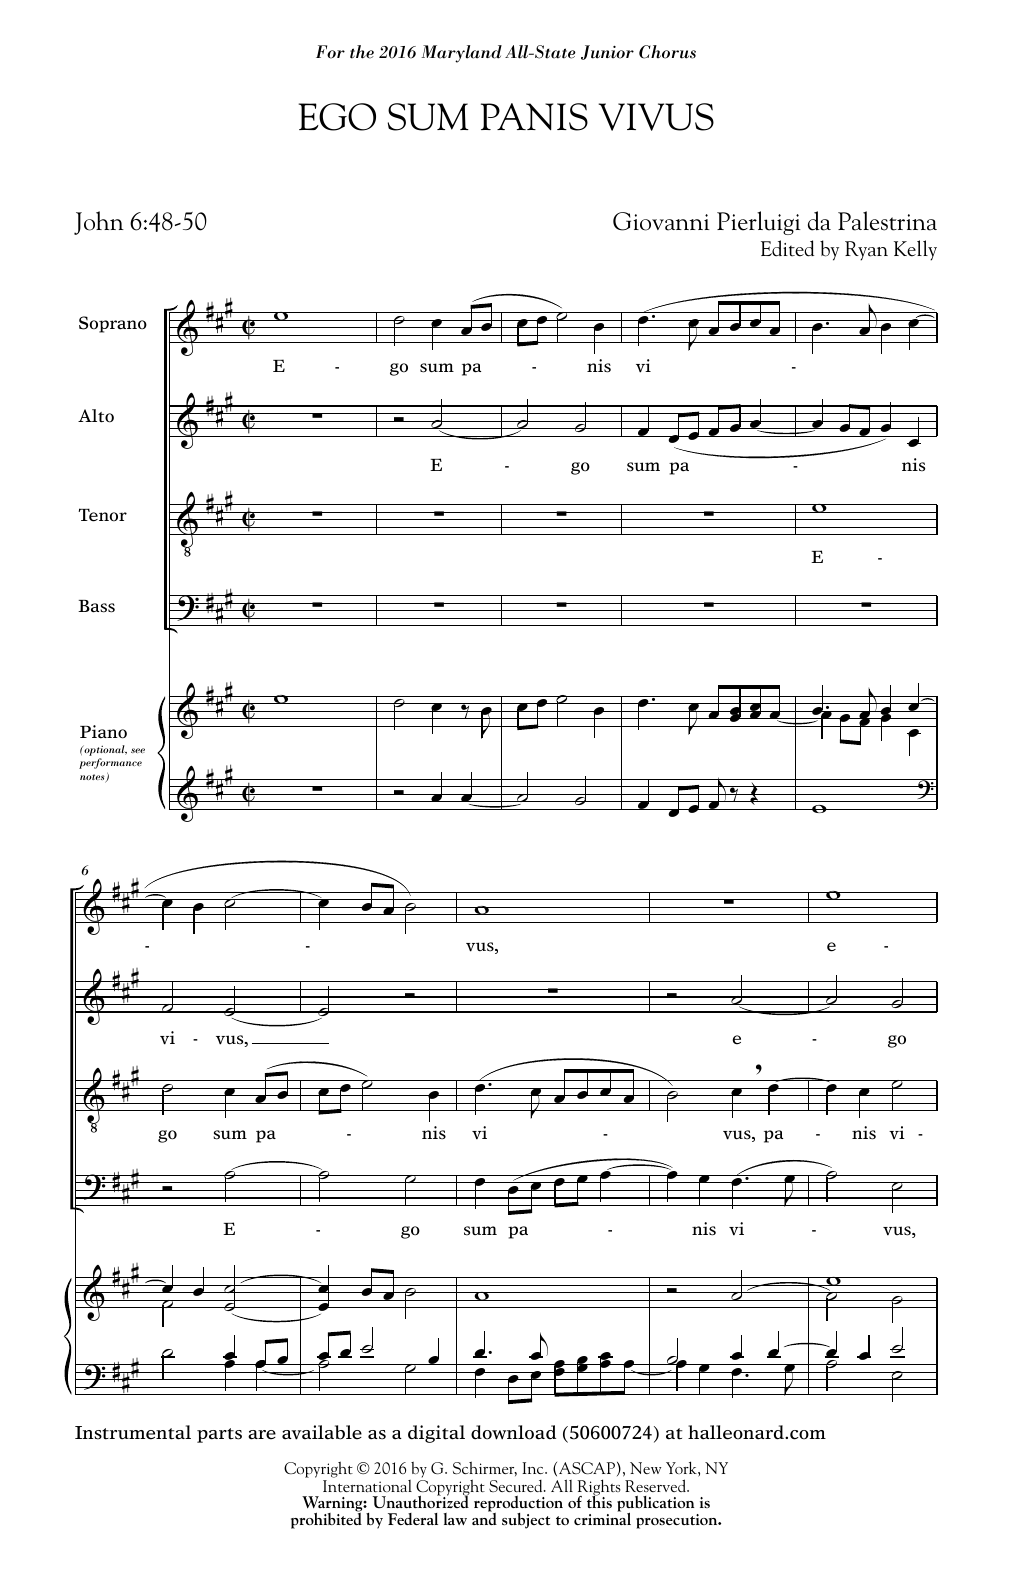 Ryan Kelly Ego Sum Panis Vivus (ed. Ryan Kelly) Sheet Music Notes & Chords for SATB - Download or Print PDF